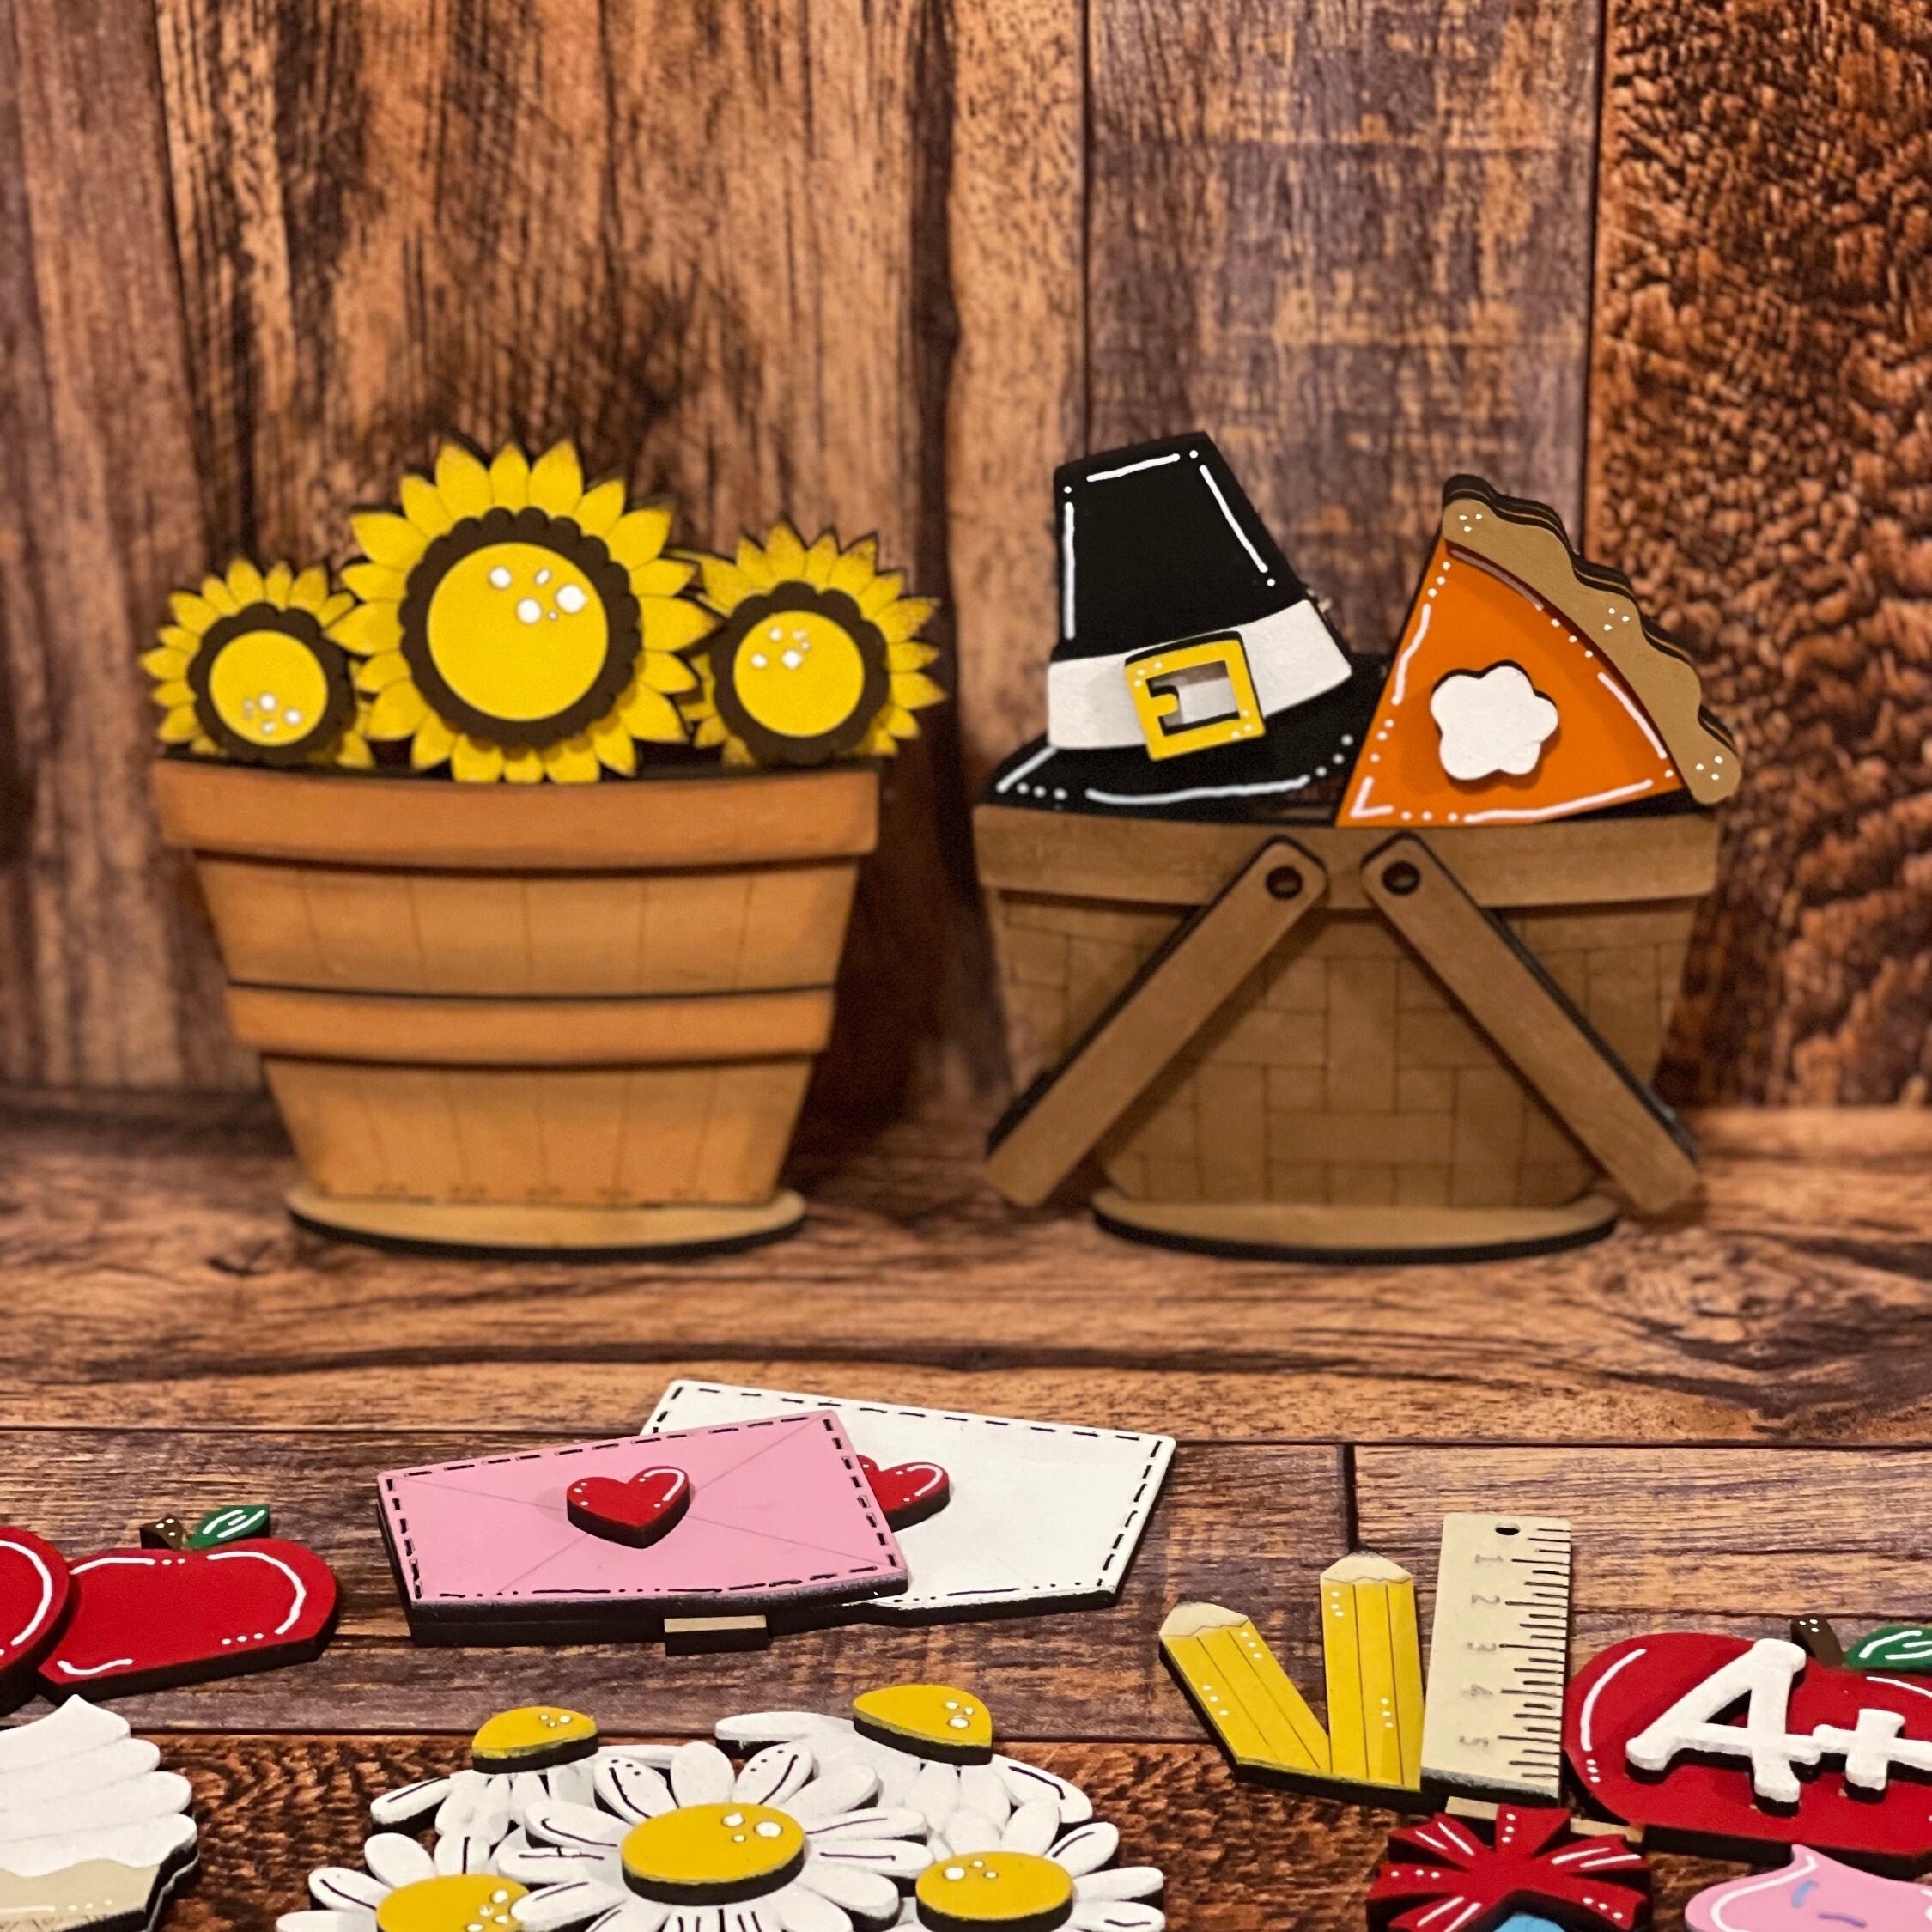 Valentine Basket Insert, Valentine Wood Project, Valentine Tiered Tray  Decor, Valentine Coffee Bar Decor, Valentine Chocolates for Display 